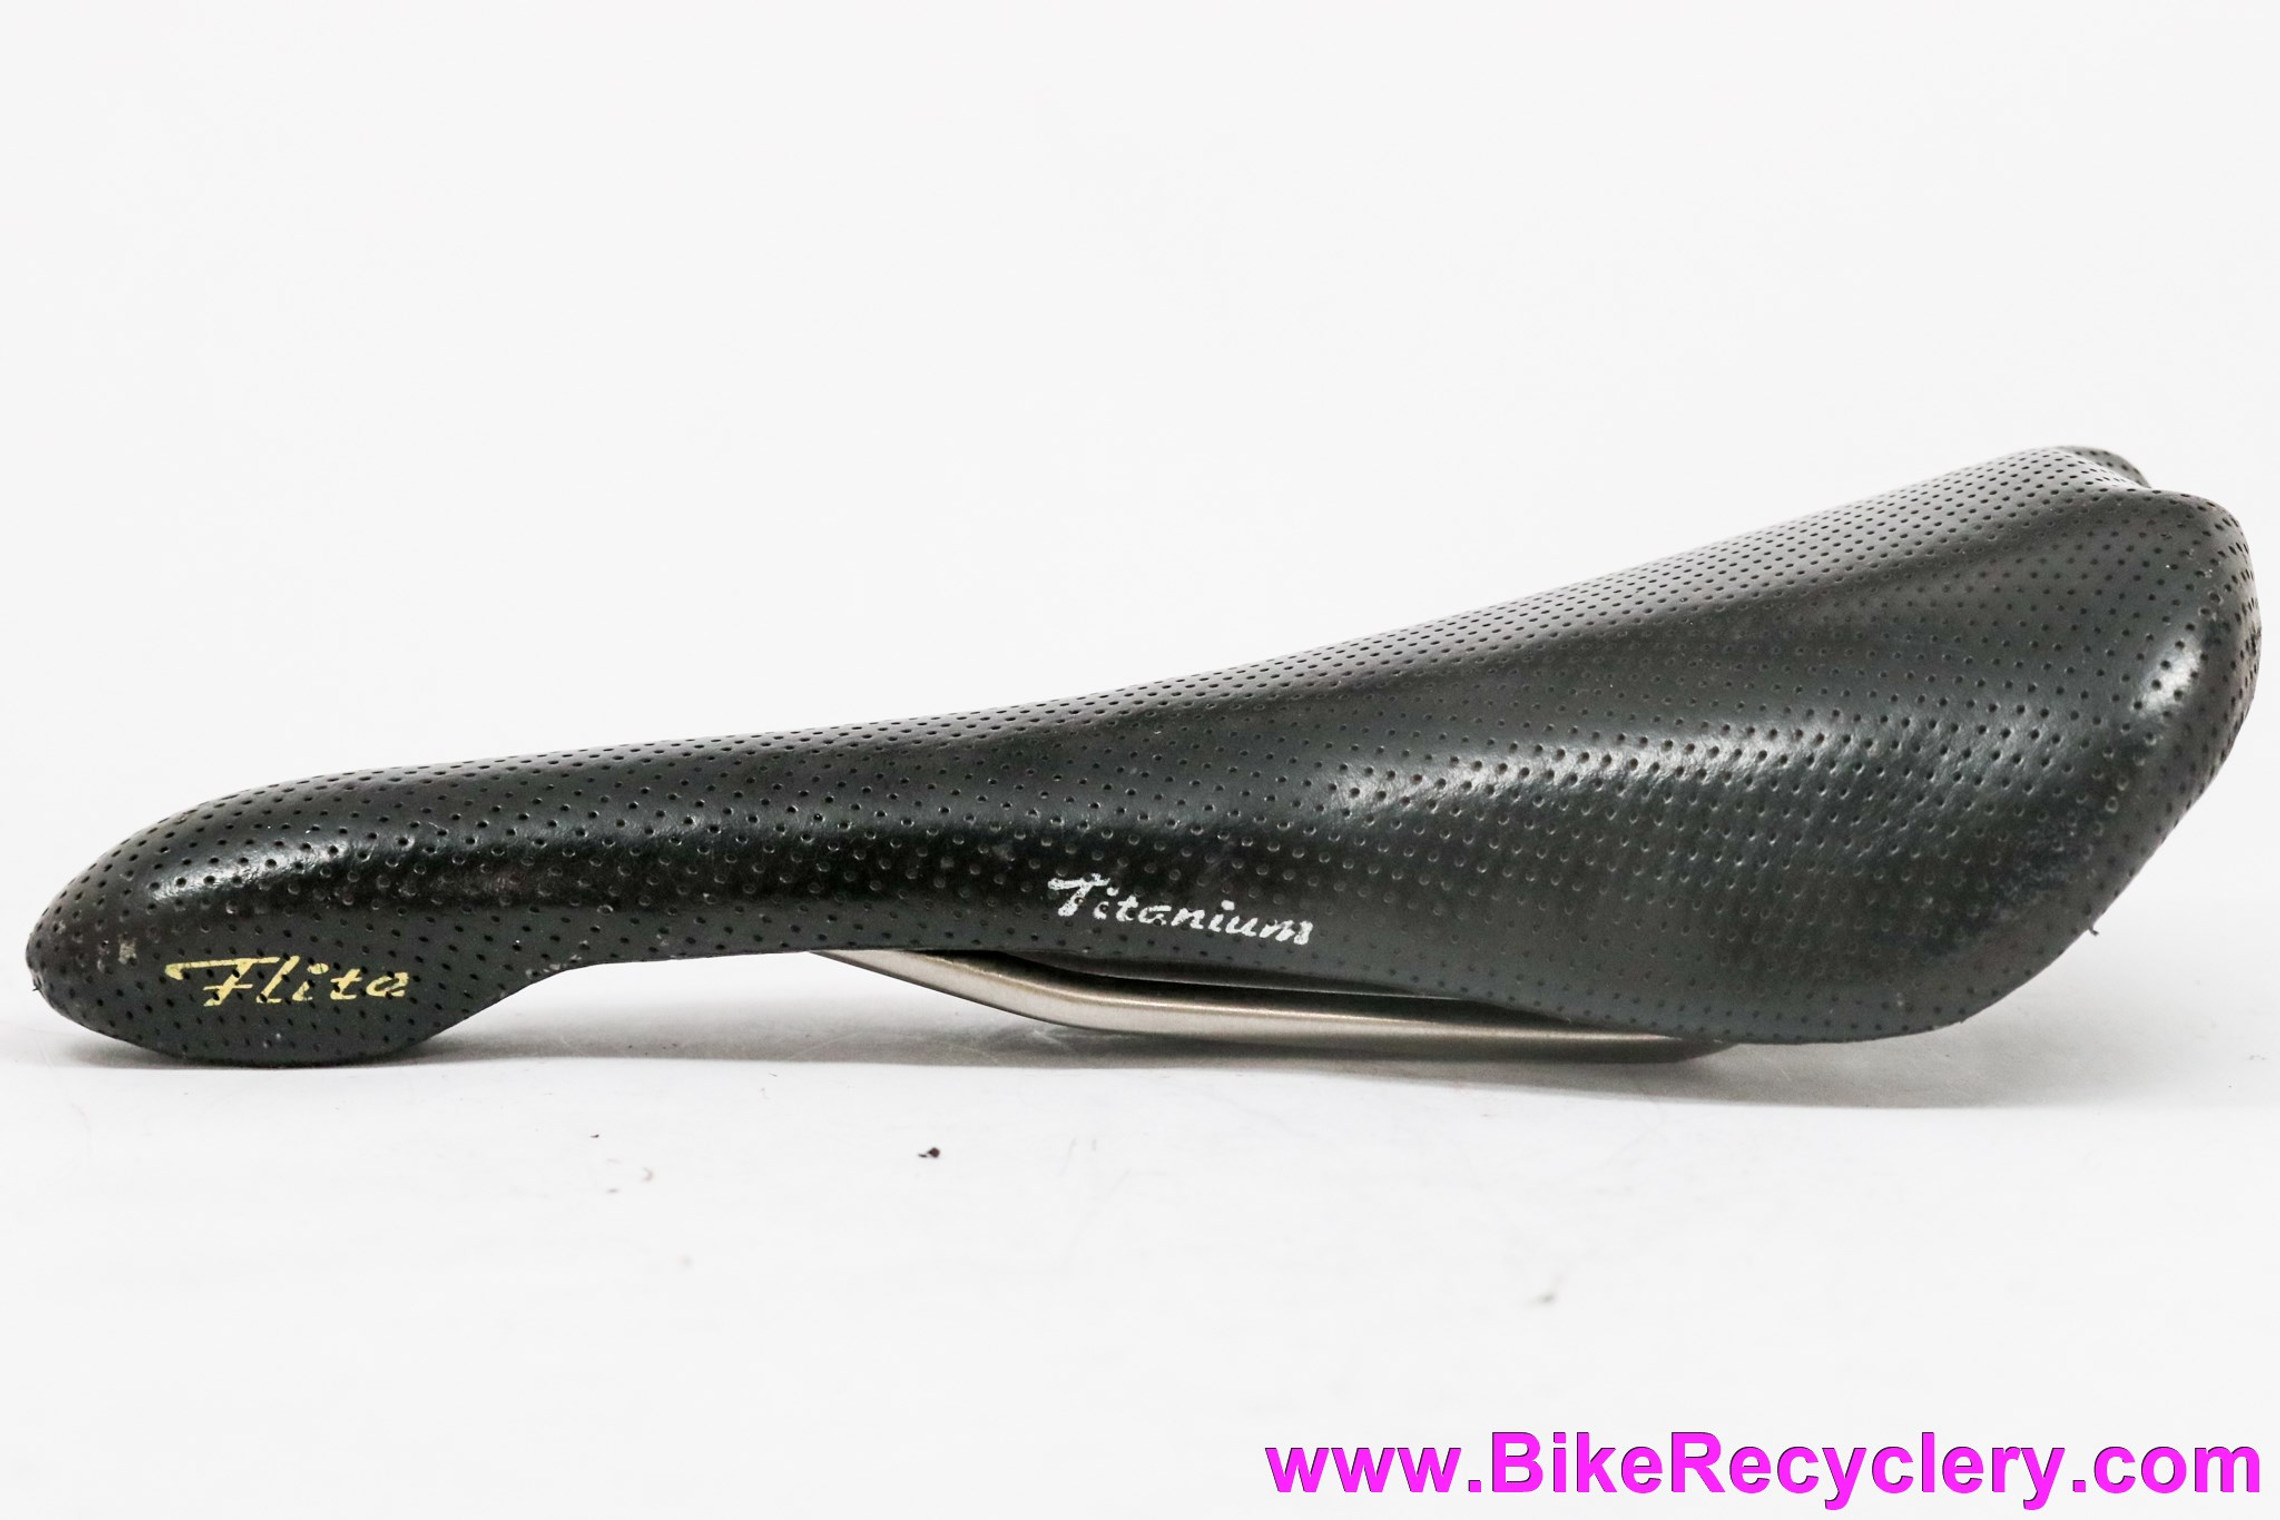 1st Gen Selle Italia Flite Titanium Saddle: Perforated Black Leather - 1997 (EXC+)